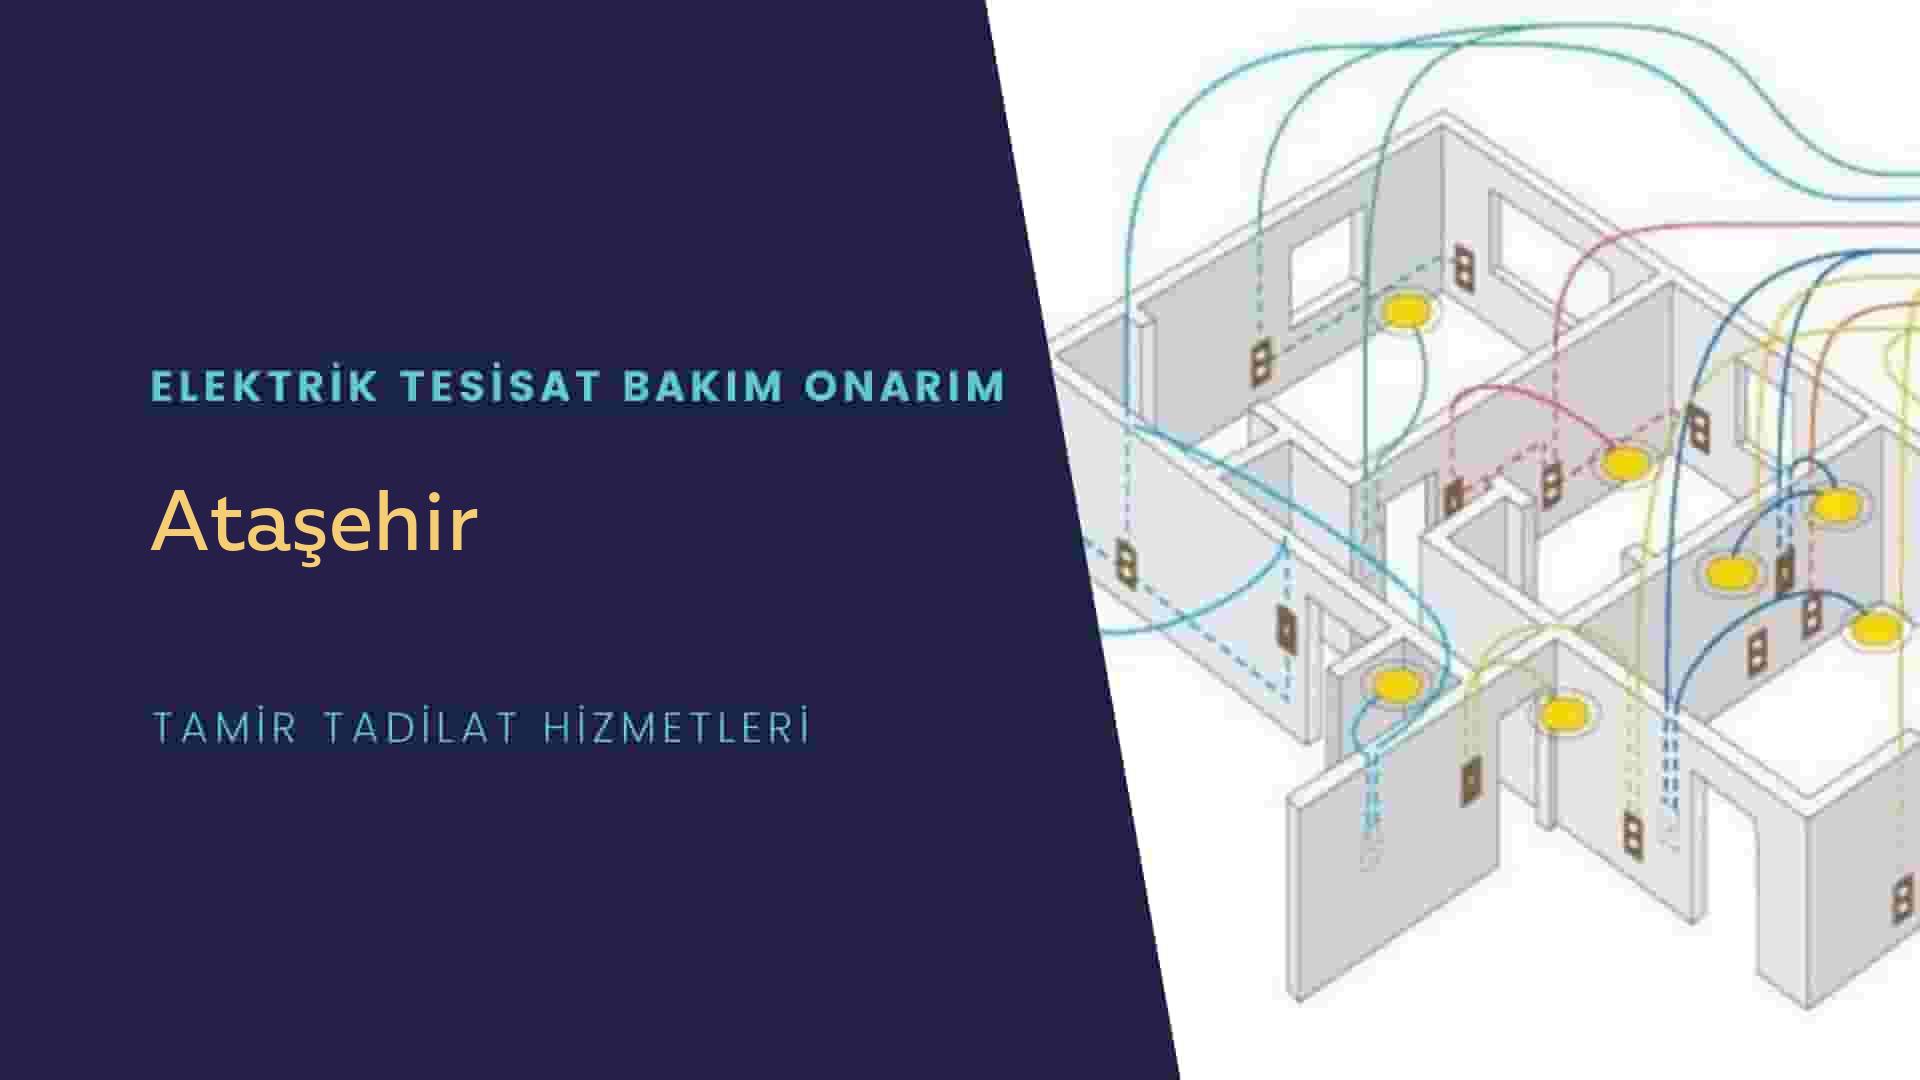 Ataşehir'de elektrik tesisatı ustalarımı arıyorsunuz doğru adrestenizi Ataşehir elektrik tesisatı ustalarımız 7/24 sizlere hizmet vermekten mutluluk duyar.